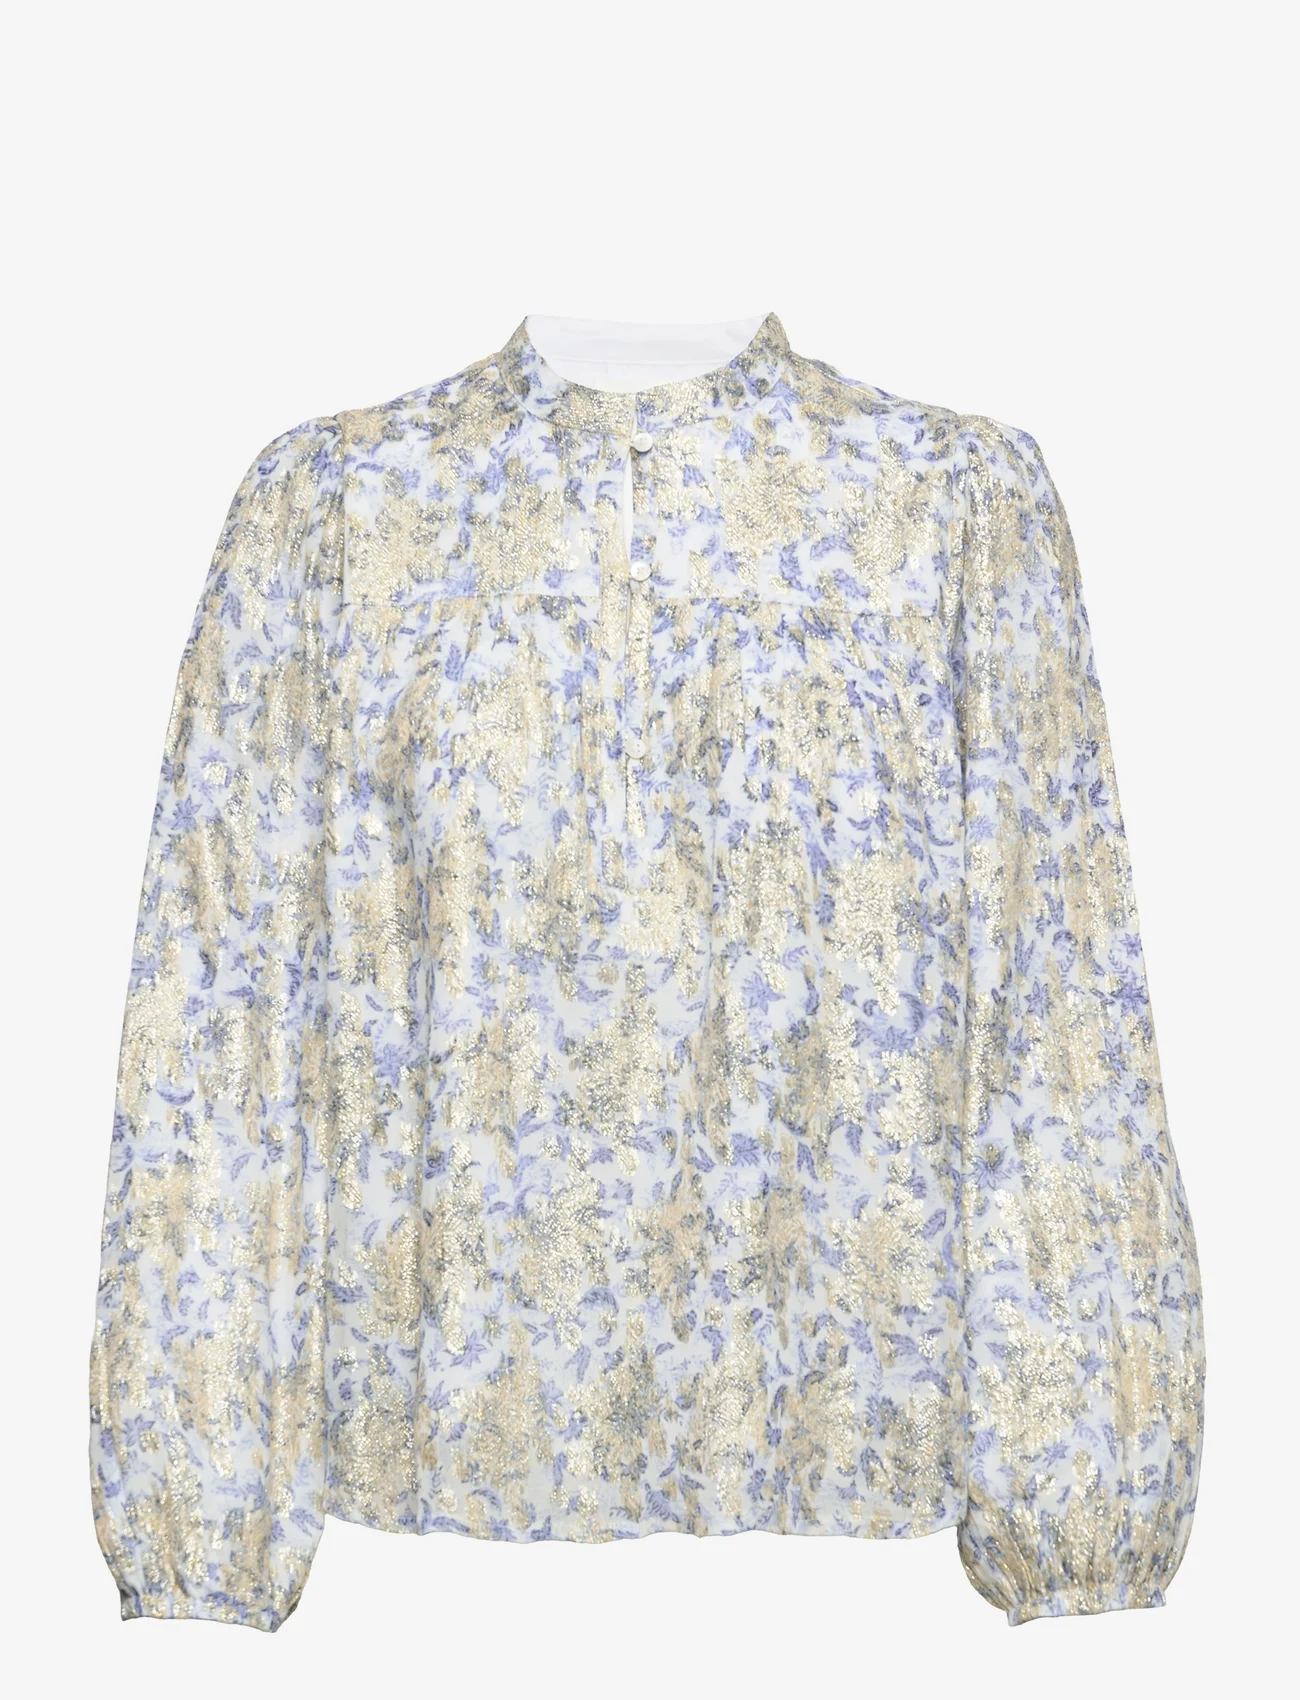 Sofie Schnoor - Shirt - blouses met lange mouwen - bright blue - 0